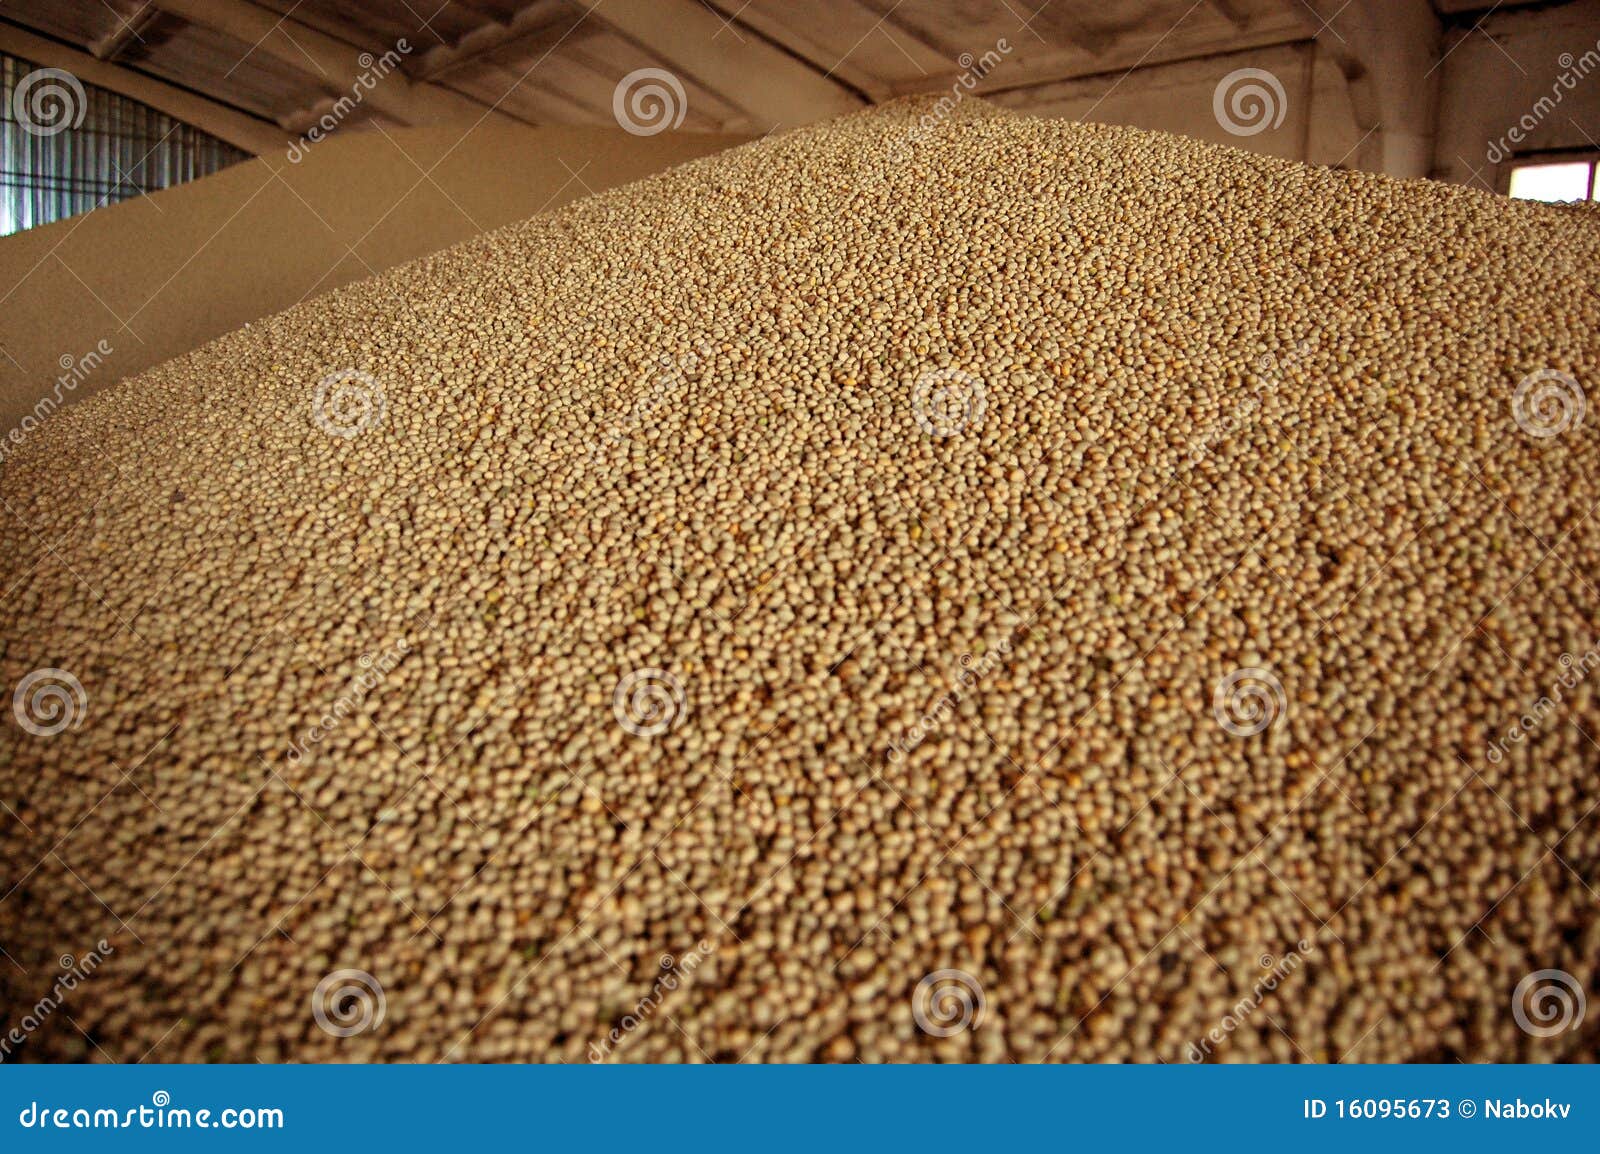 seeds of soya